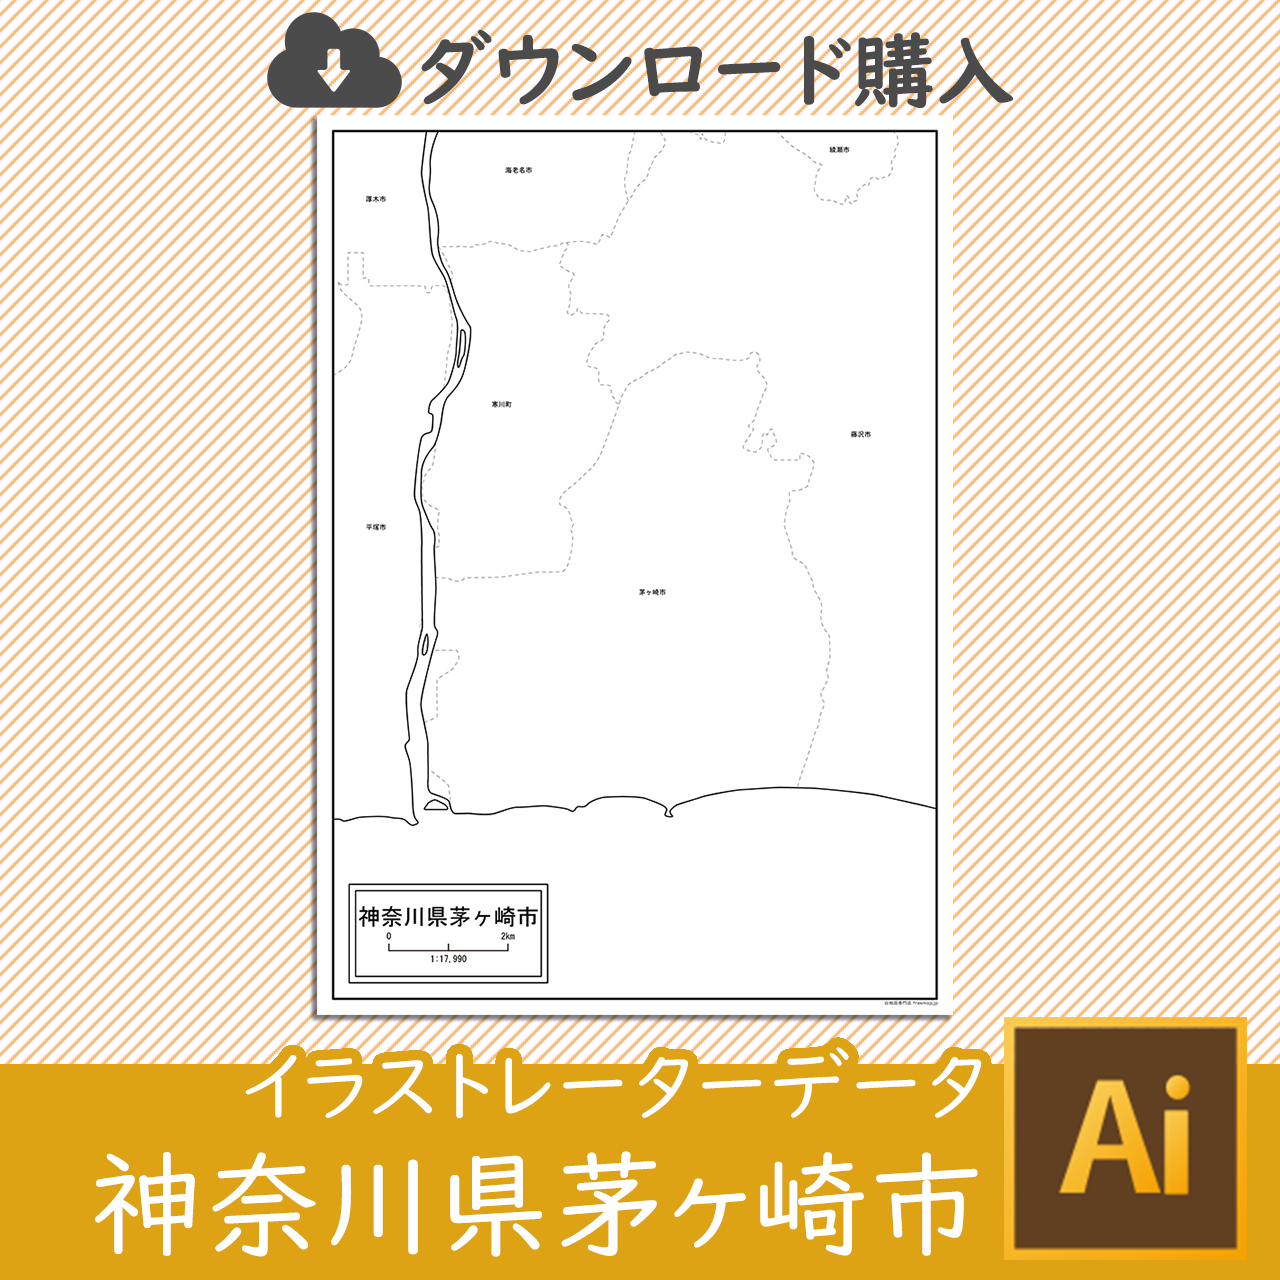 茅ヶ崎市のaiデータのサムネイル画像